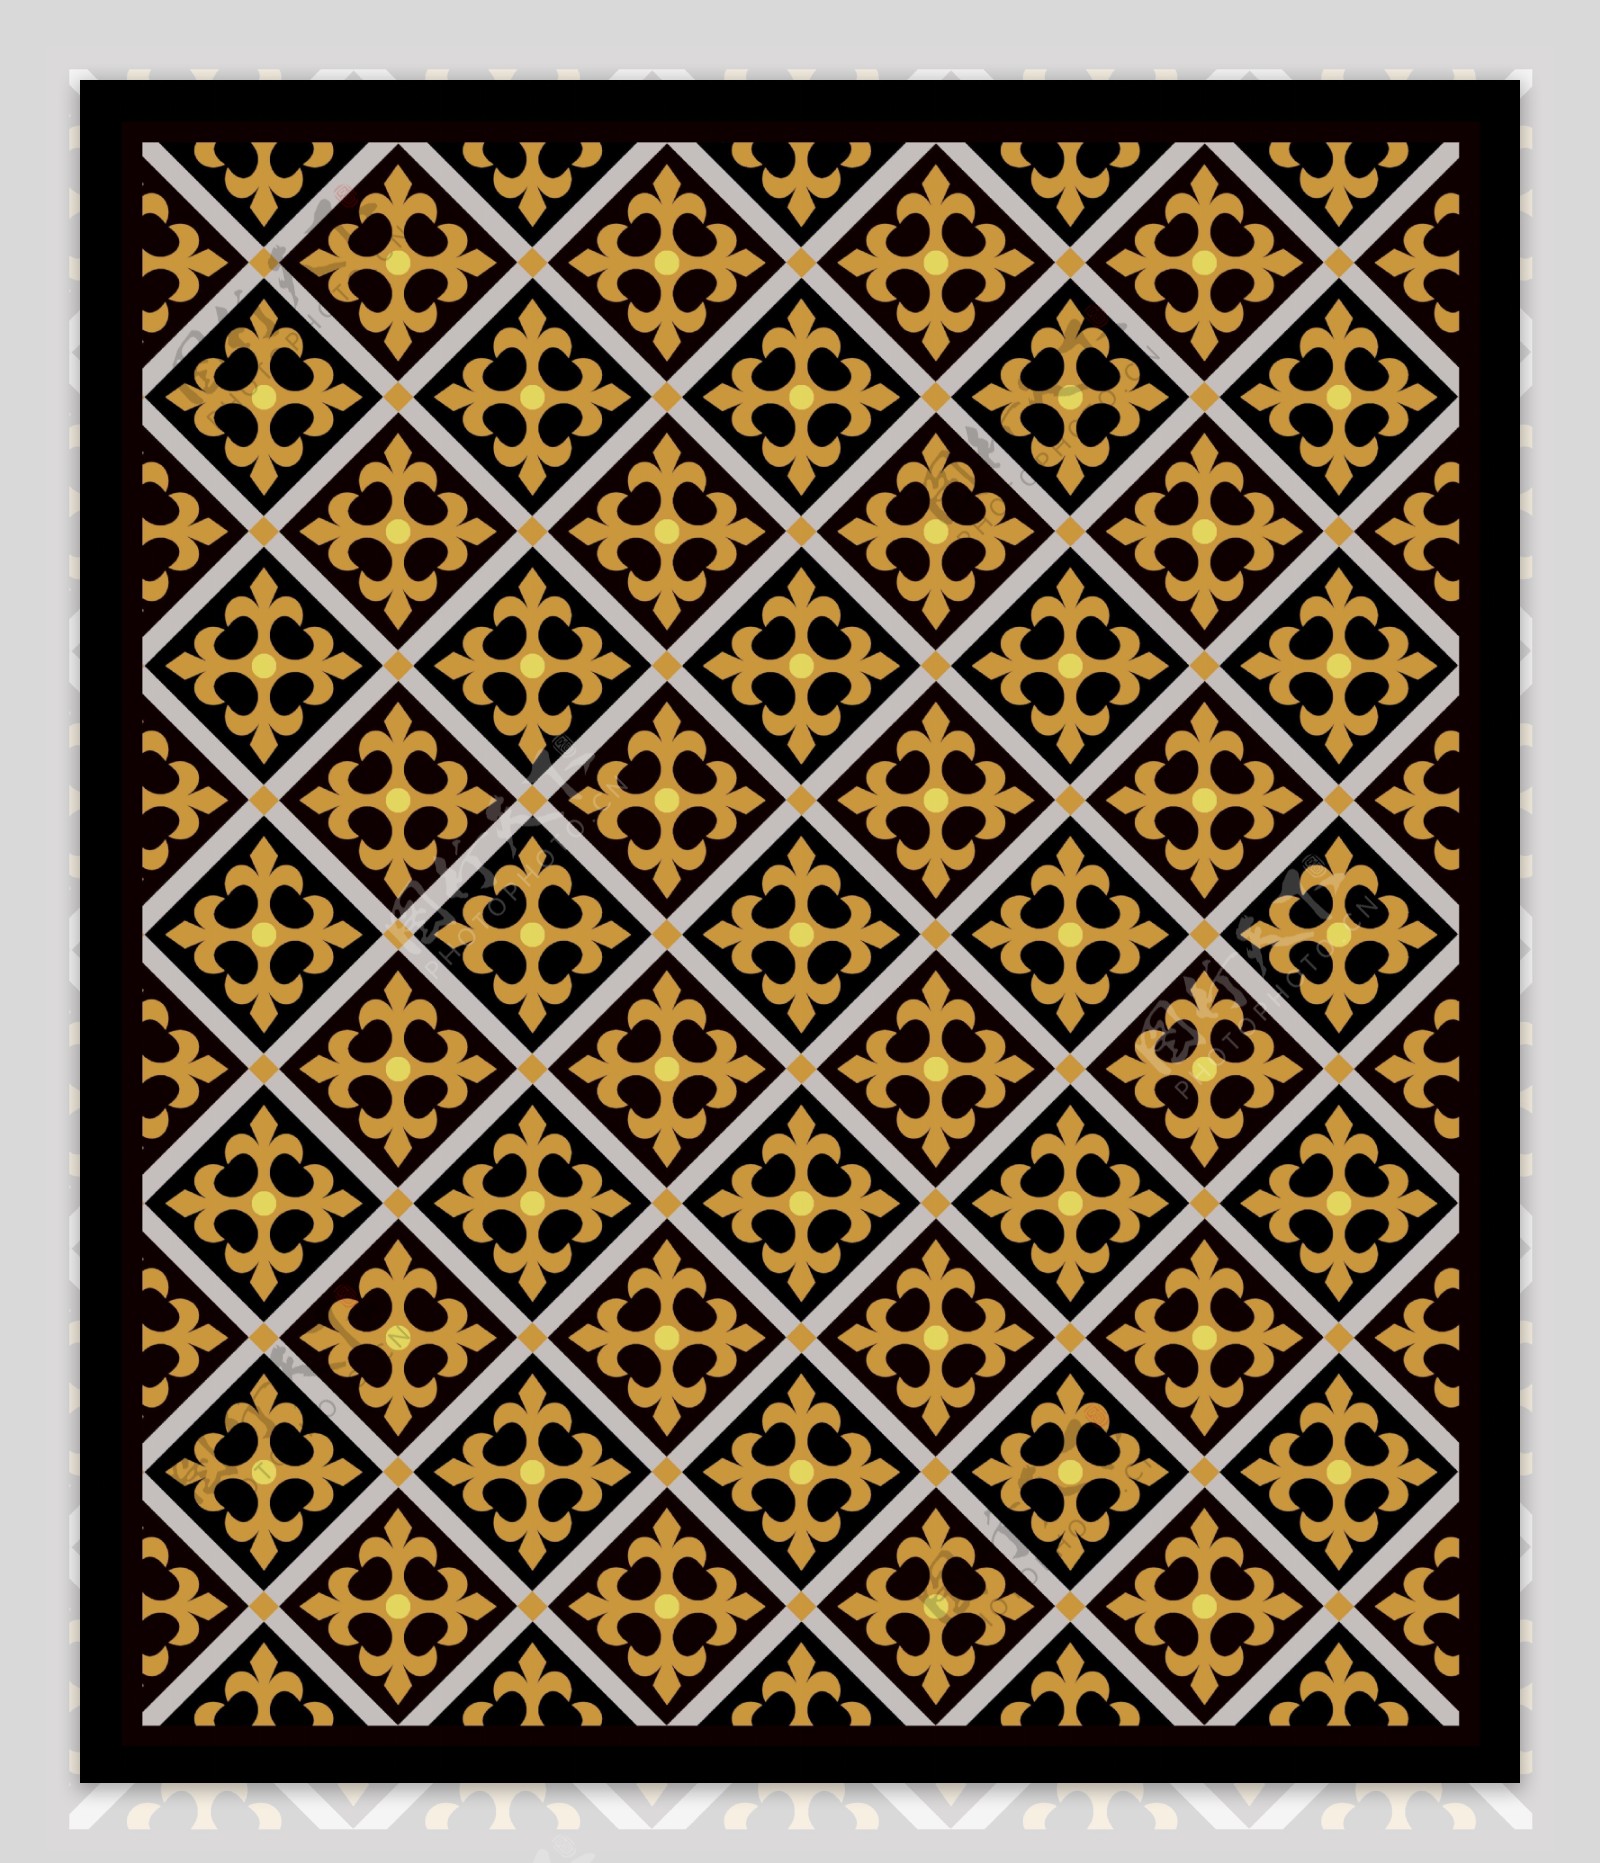 地毯花纹